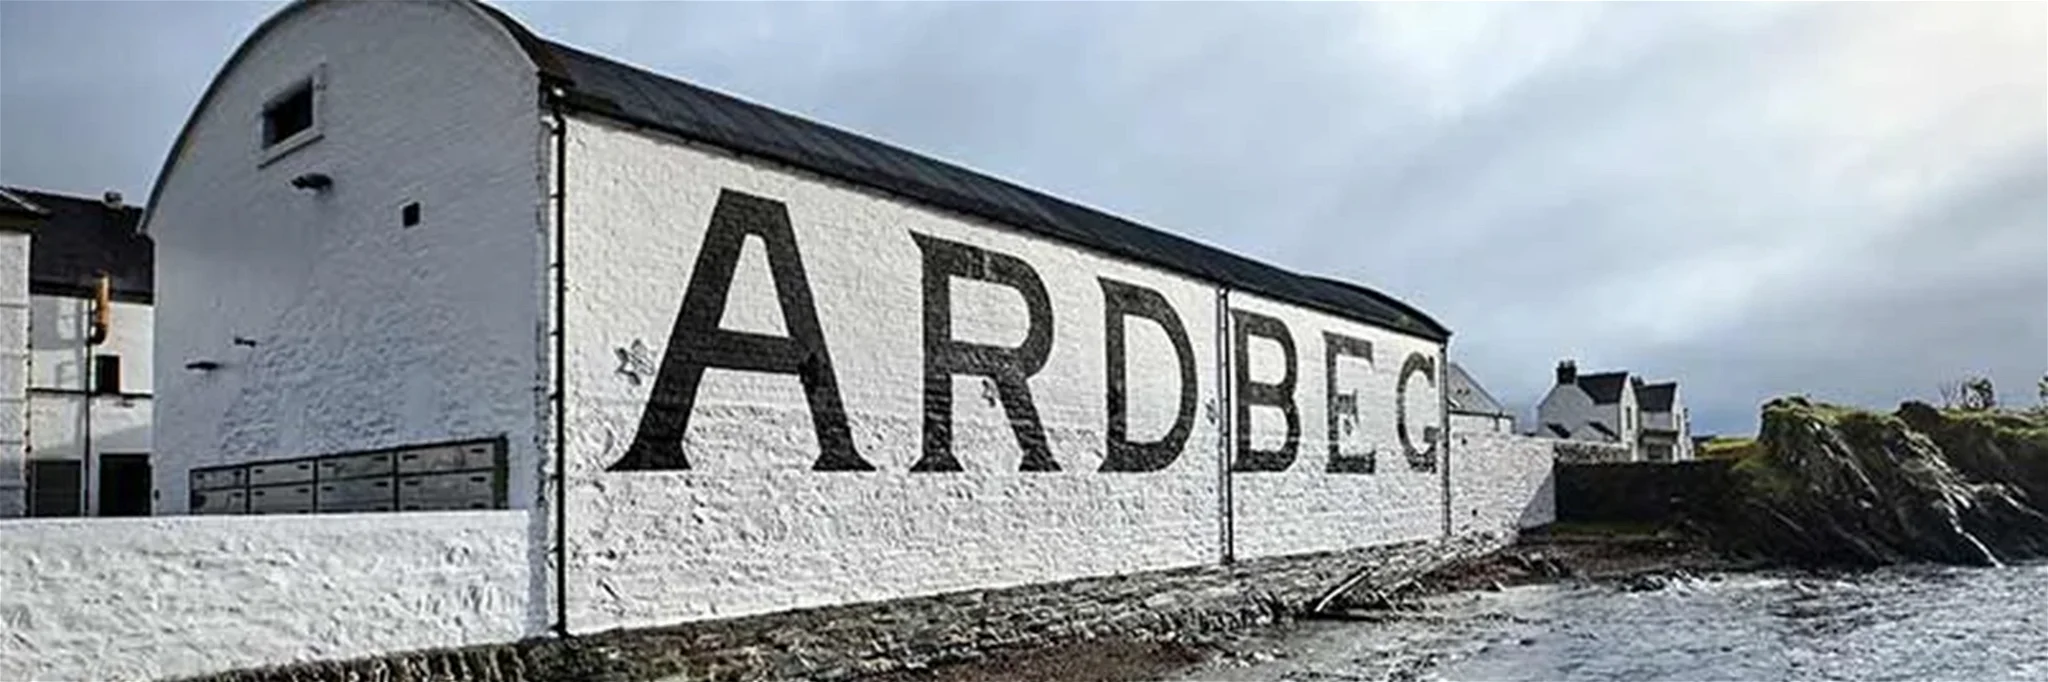 Die Ardbeg Distillery auf der schottischen Insel Islay will Besuchern der Brennerei mehr Erlebnis bieten und kauft daher das »The Islay Hotel« im Hafenstädtchen Port Ellen.